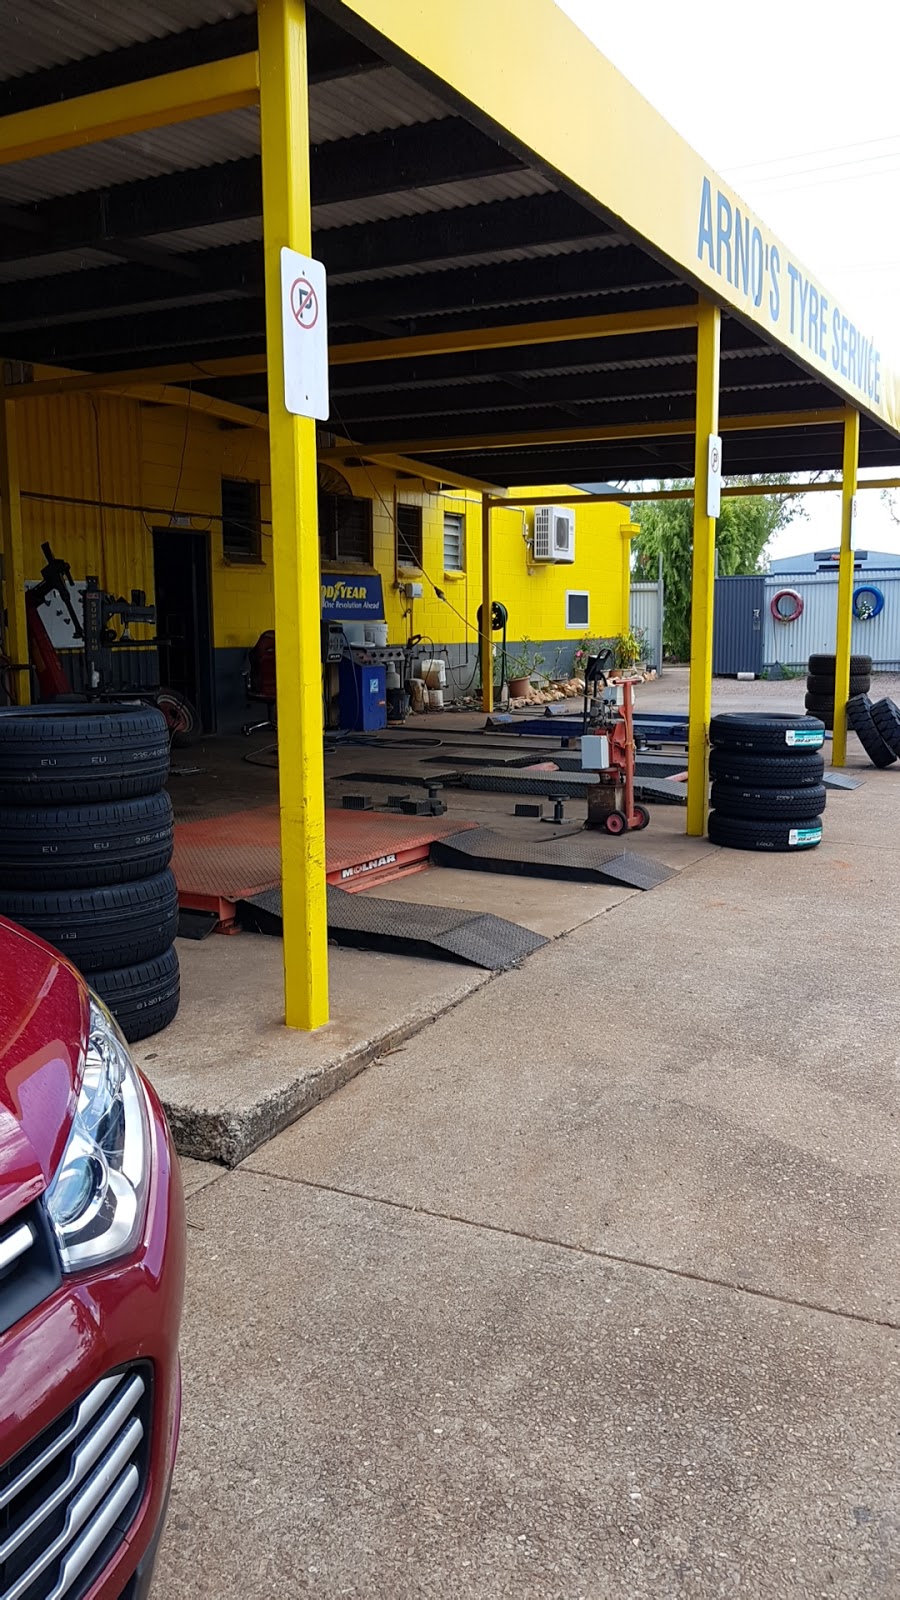 Arnos Tyre Service | car repair | 146 Coonawarra Rd, Winnellie NT 0820, Australia | 0889472190 OR +61 8 8947 2190